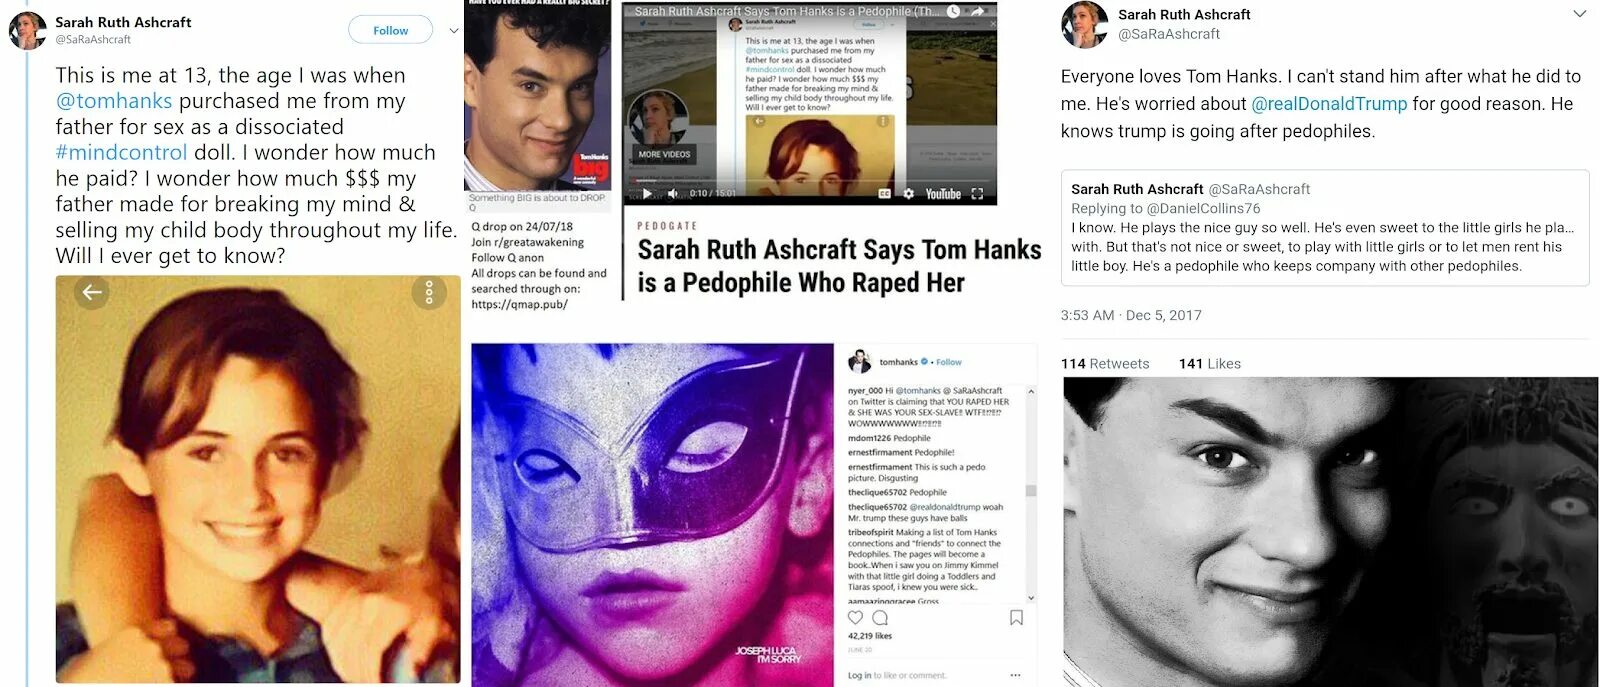 Him sarah and. Tom Hanks pedophile. Sarah Ruth Ashcraft. Tom Hanks Pizzagate. Isaac Kappy Tom Hanks.